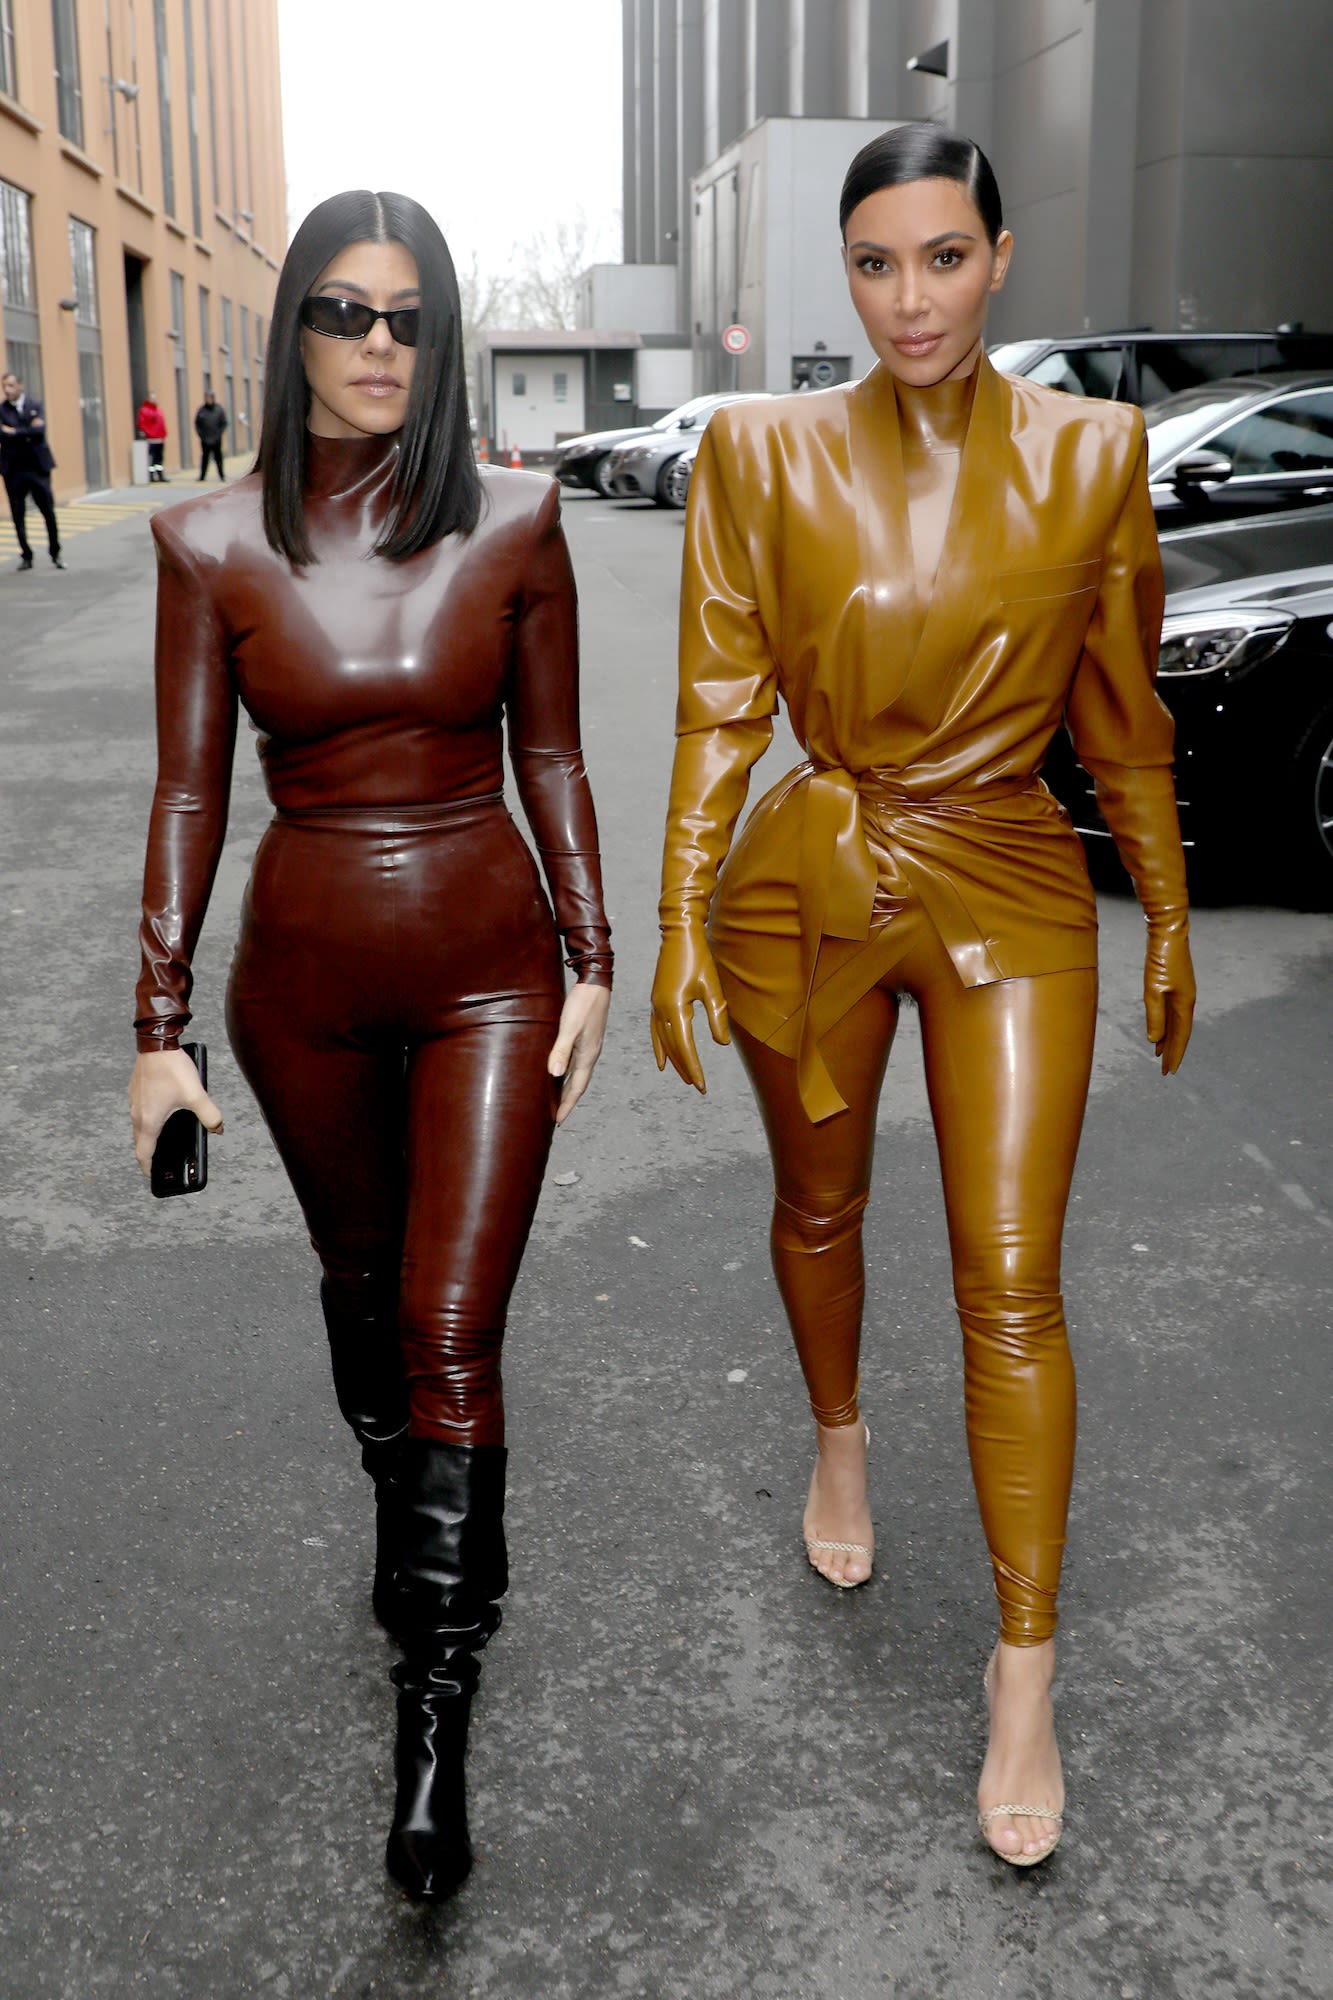 Kourtney Kardashian Shares How Kim ‘Walks’ With Her and Rocky